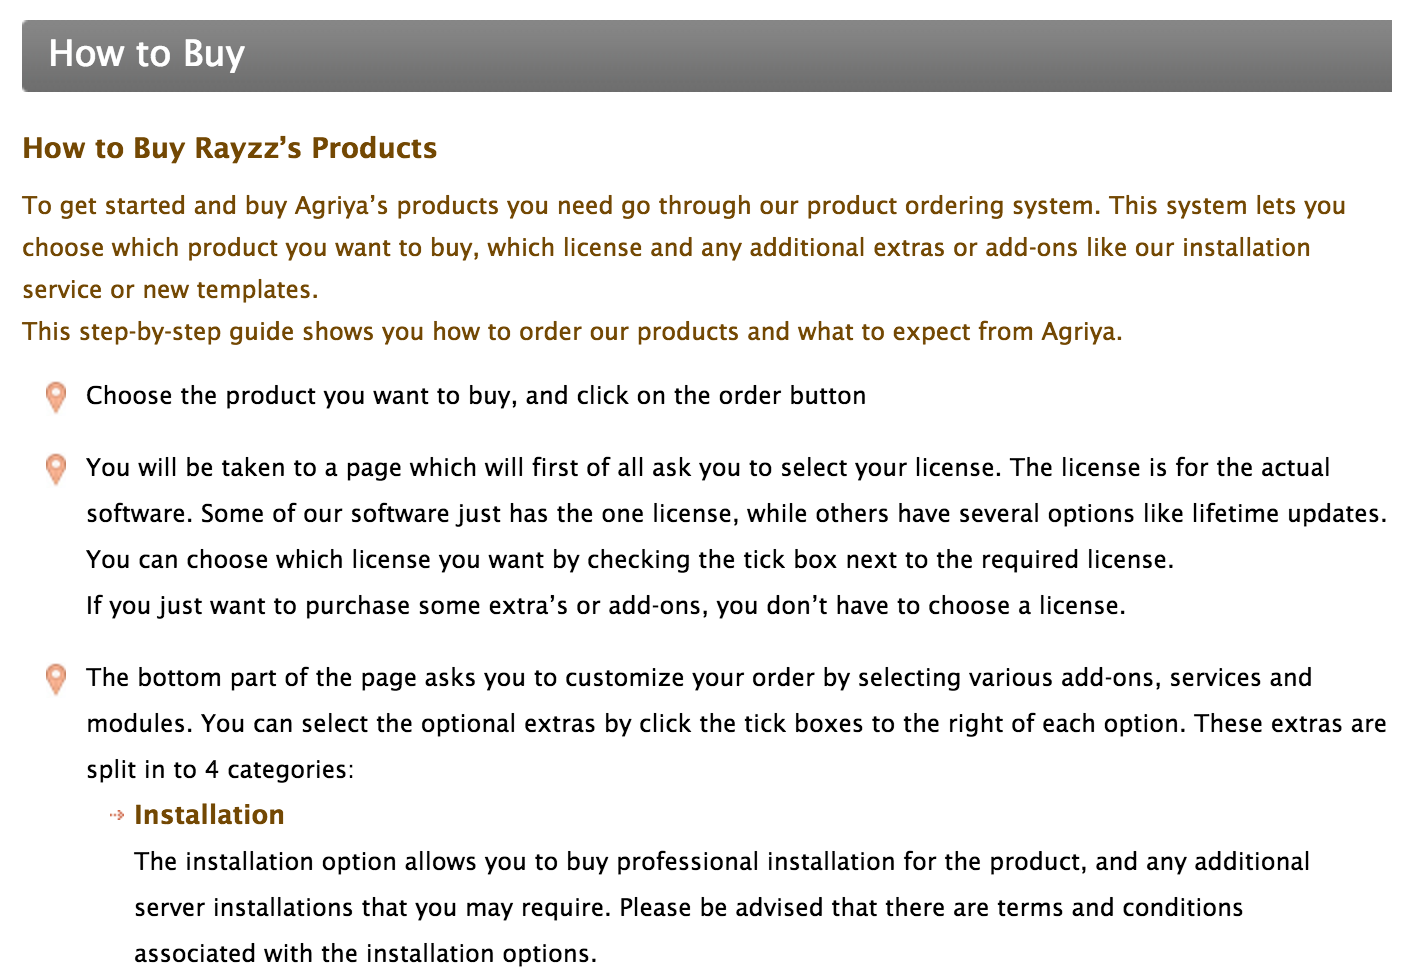 Screenshot of Rayzz purchase process